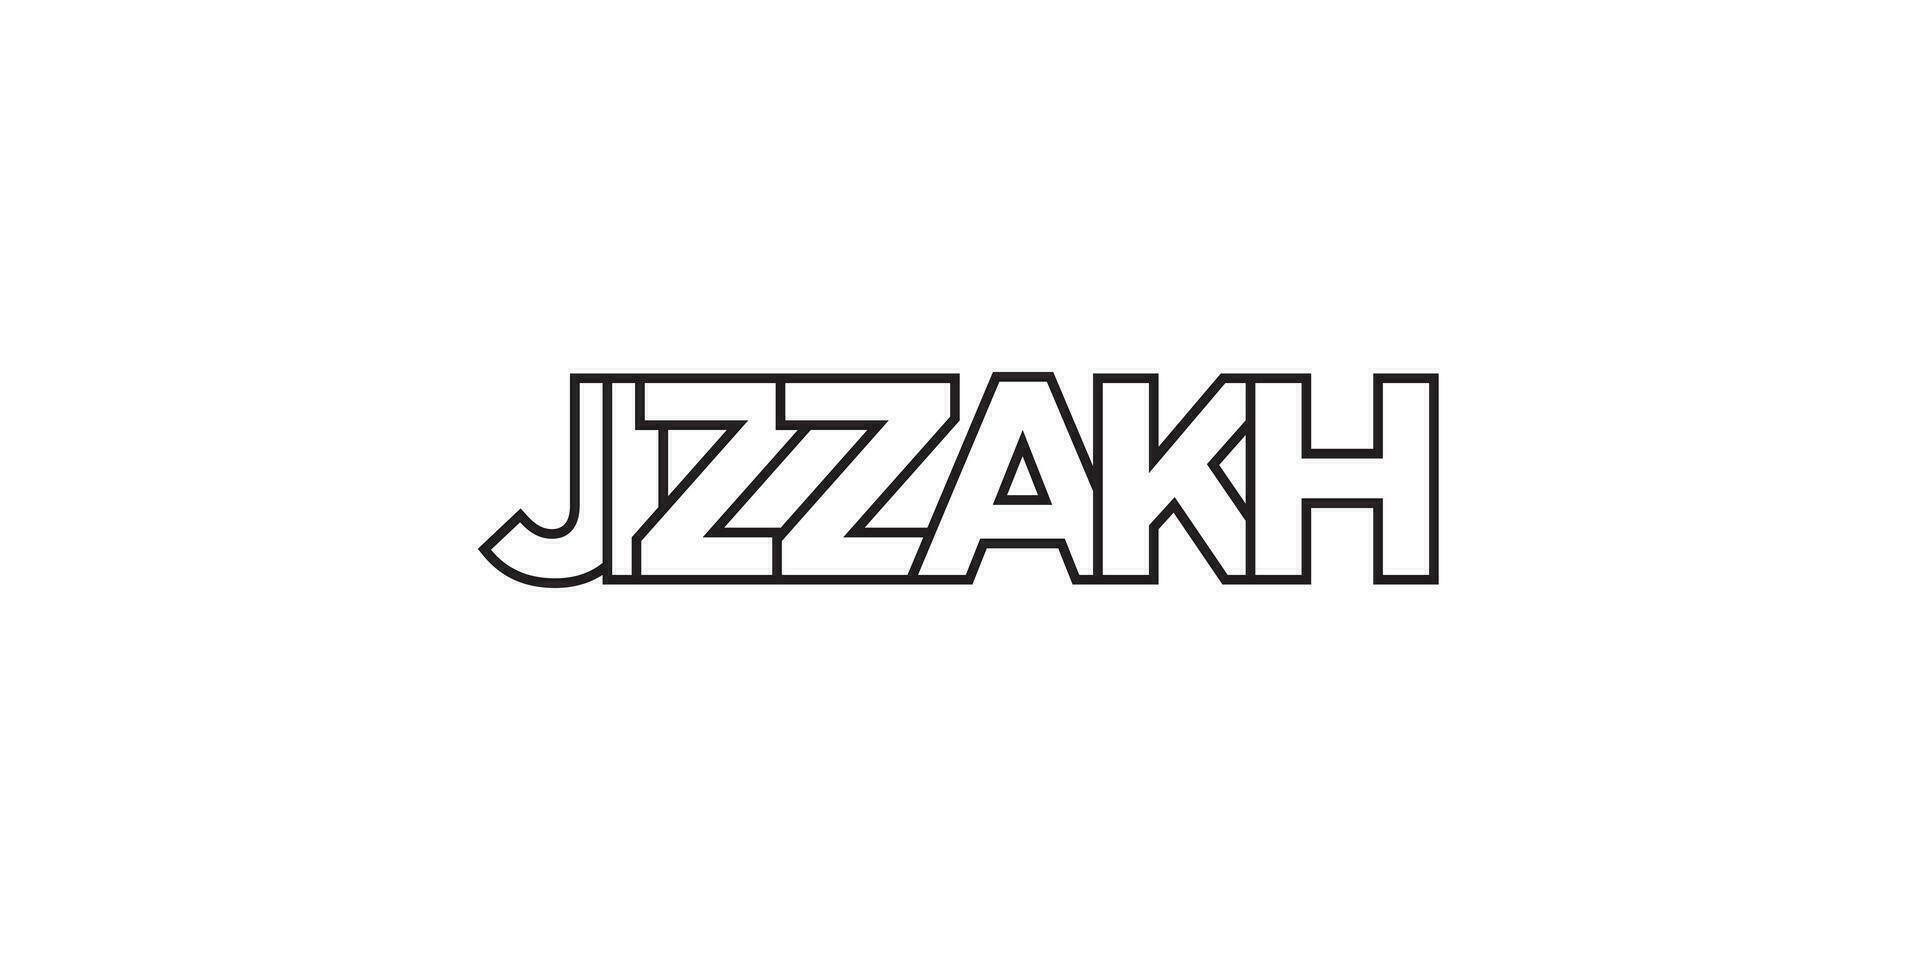 jizzakh in de Oezbekistan embleem. de ontwerp Kenmerken een meetkundig stijl, vector illustratie met stoutmoedig typografie in een modern lettertype. de grafisch leuze belettering.